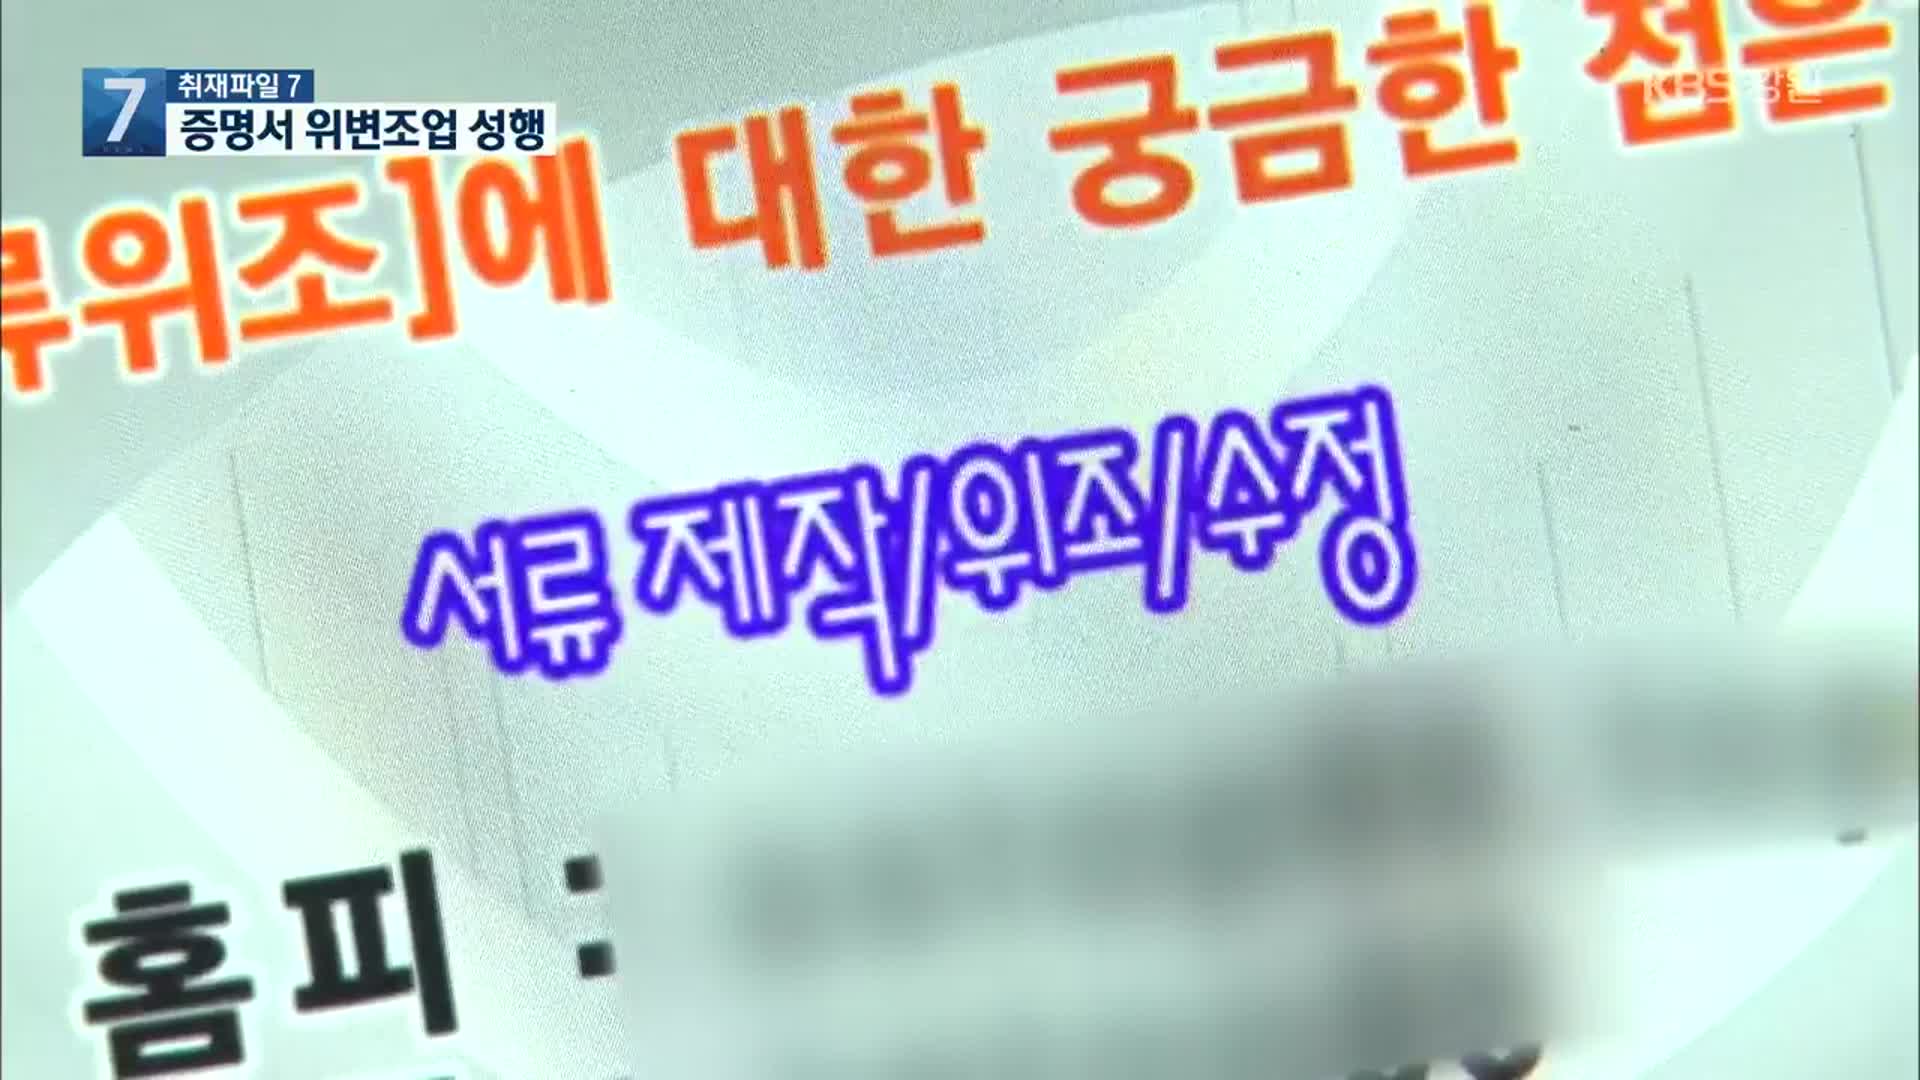 [취재파일7] 증명서 위변조 활개…졸업장 3시간이면 위조